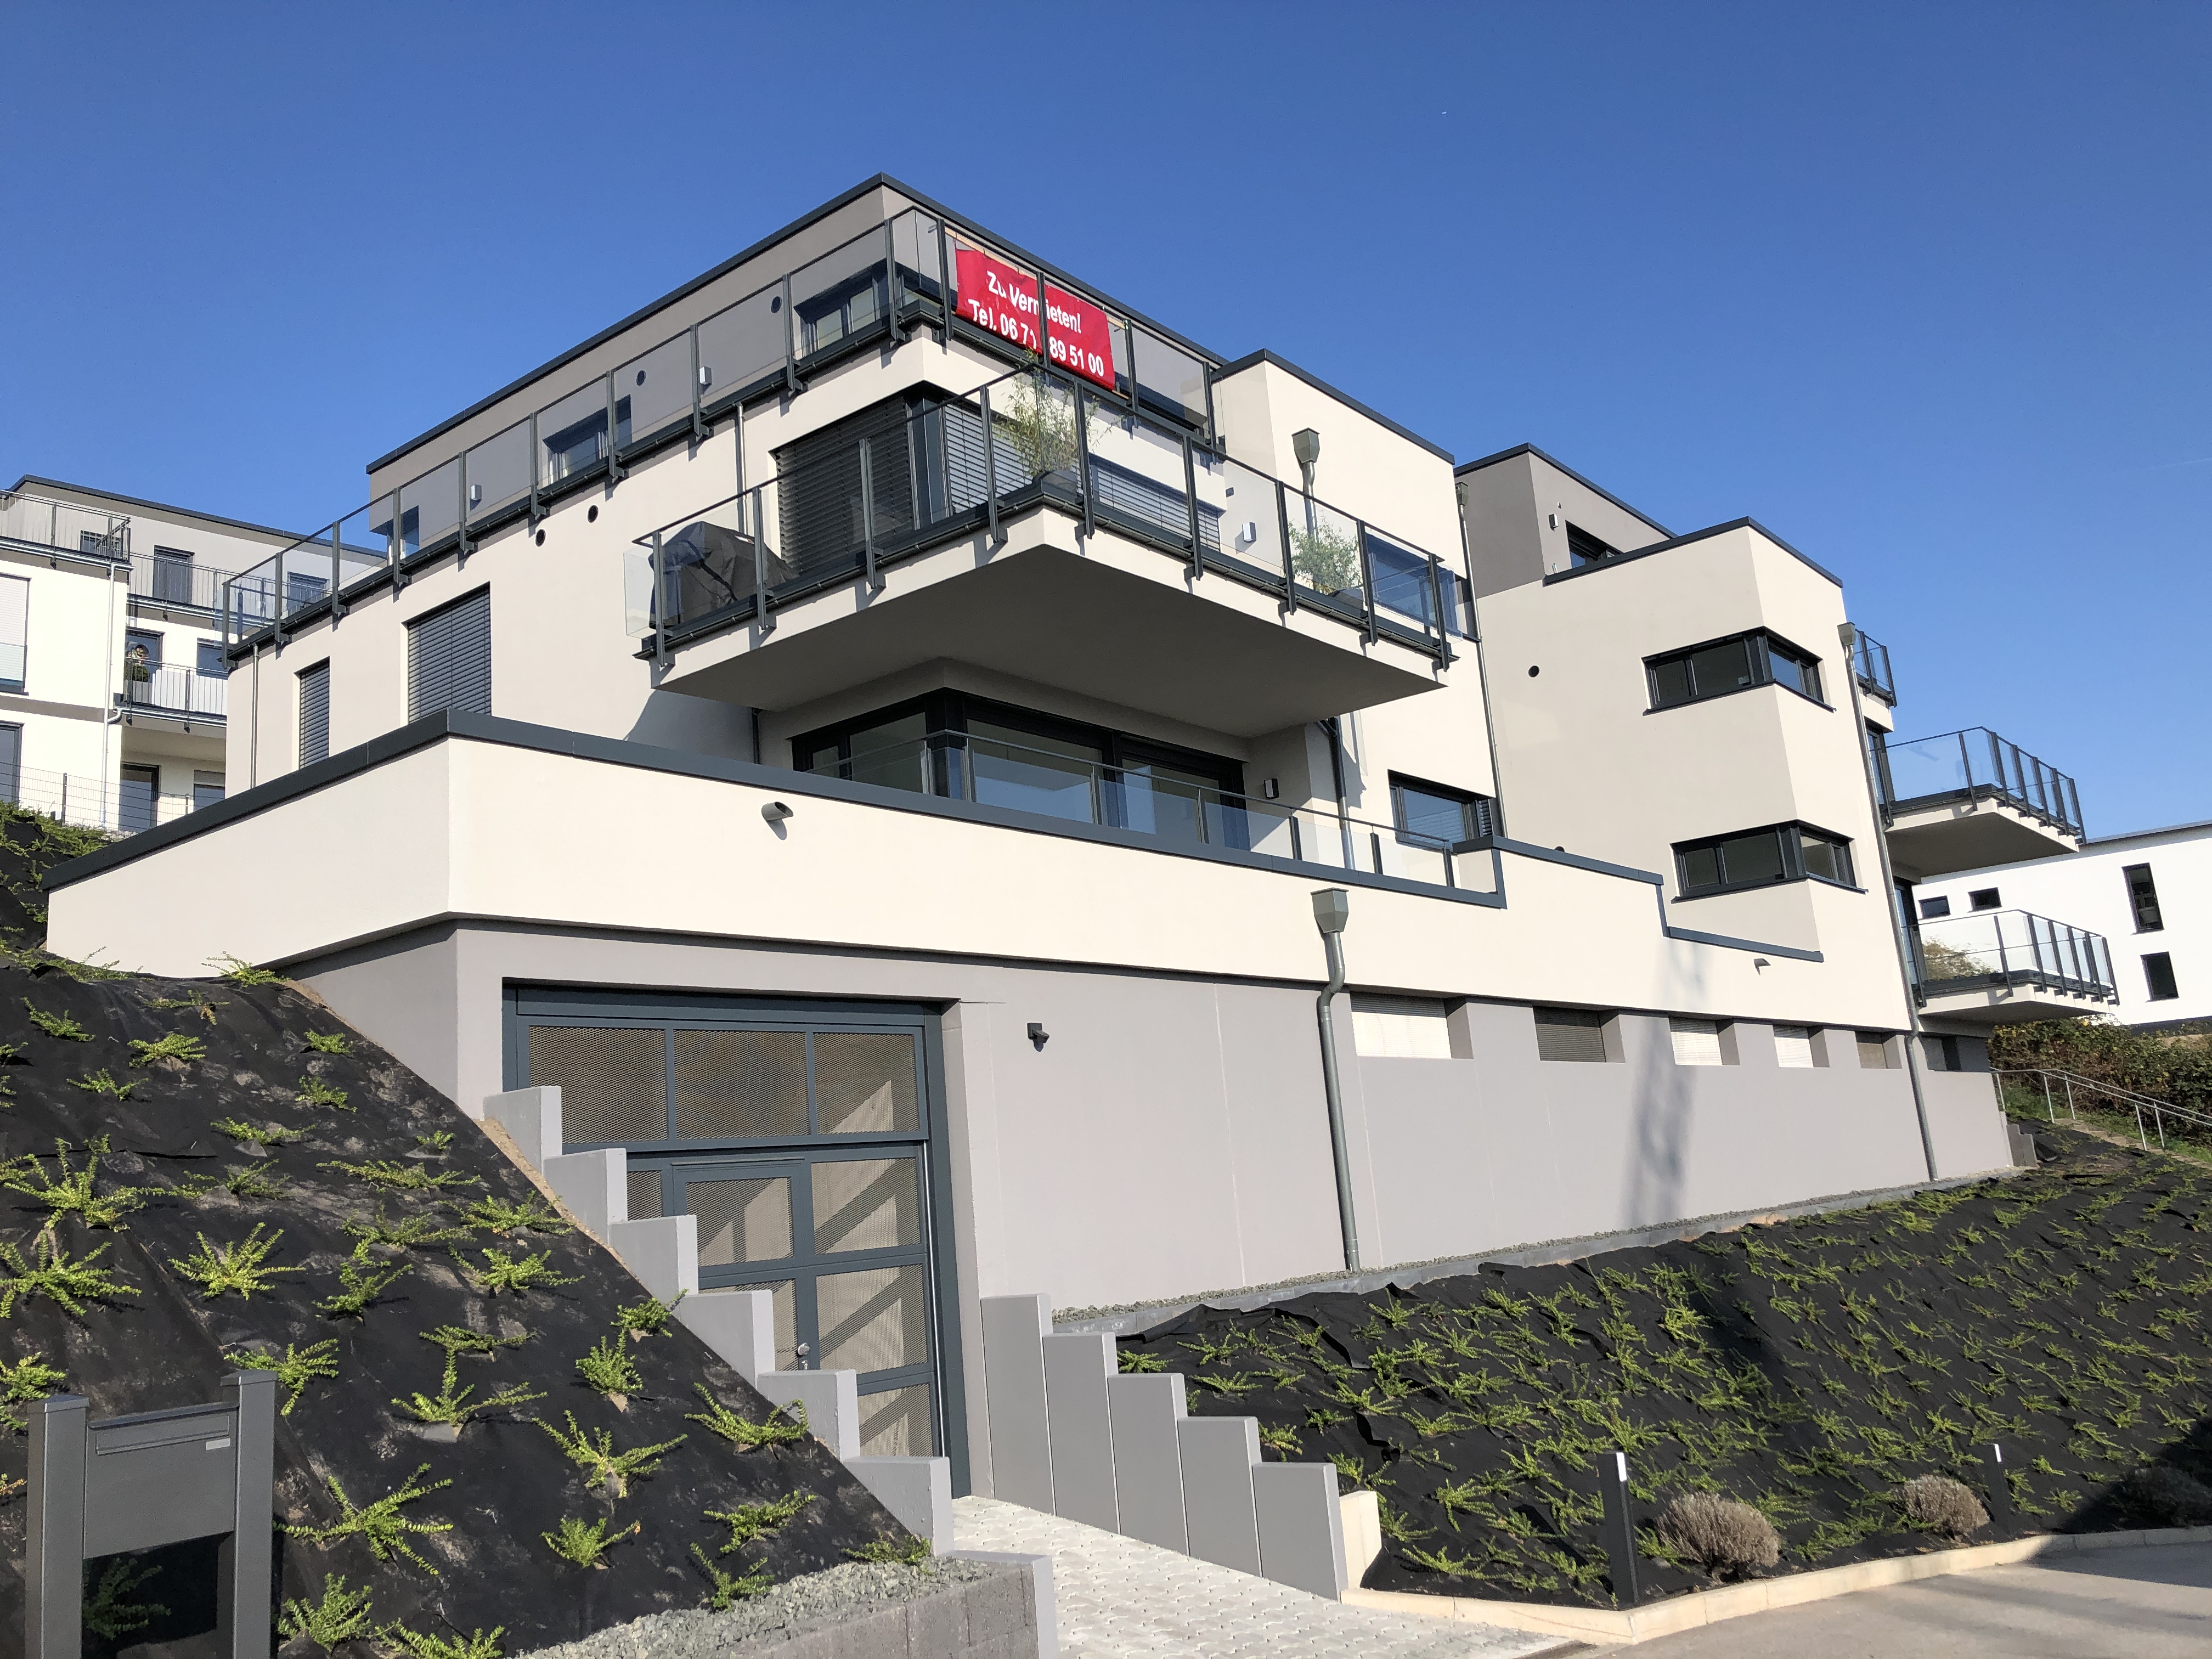 Neubau eines Merhfamilienhaus in Bad Kreuznach 1